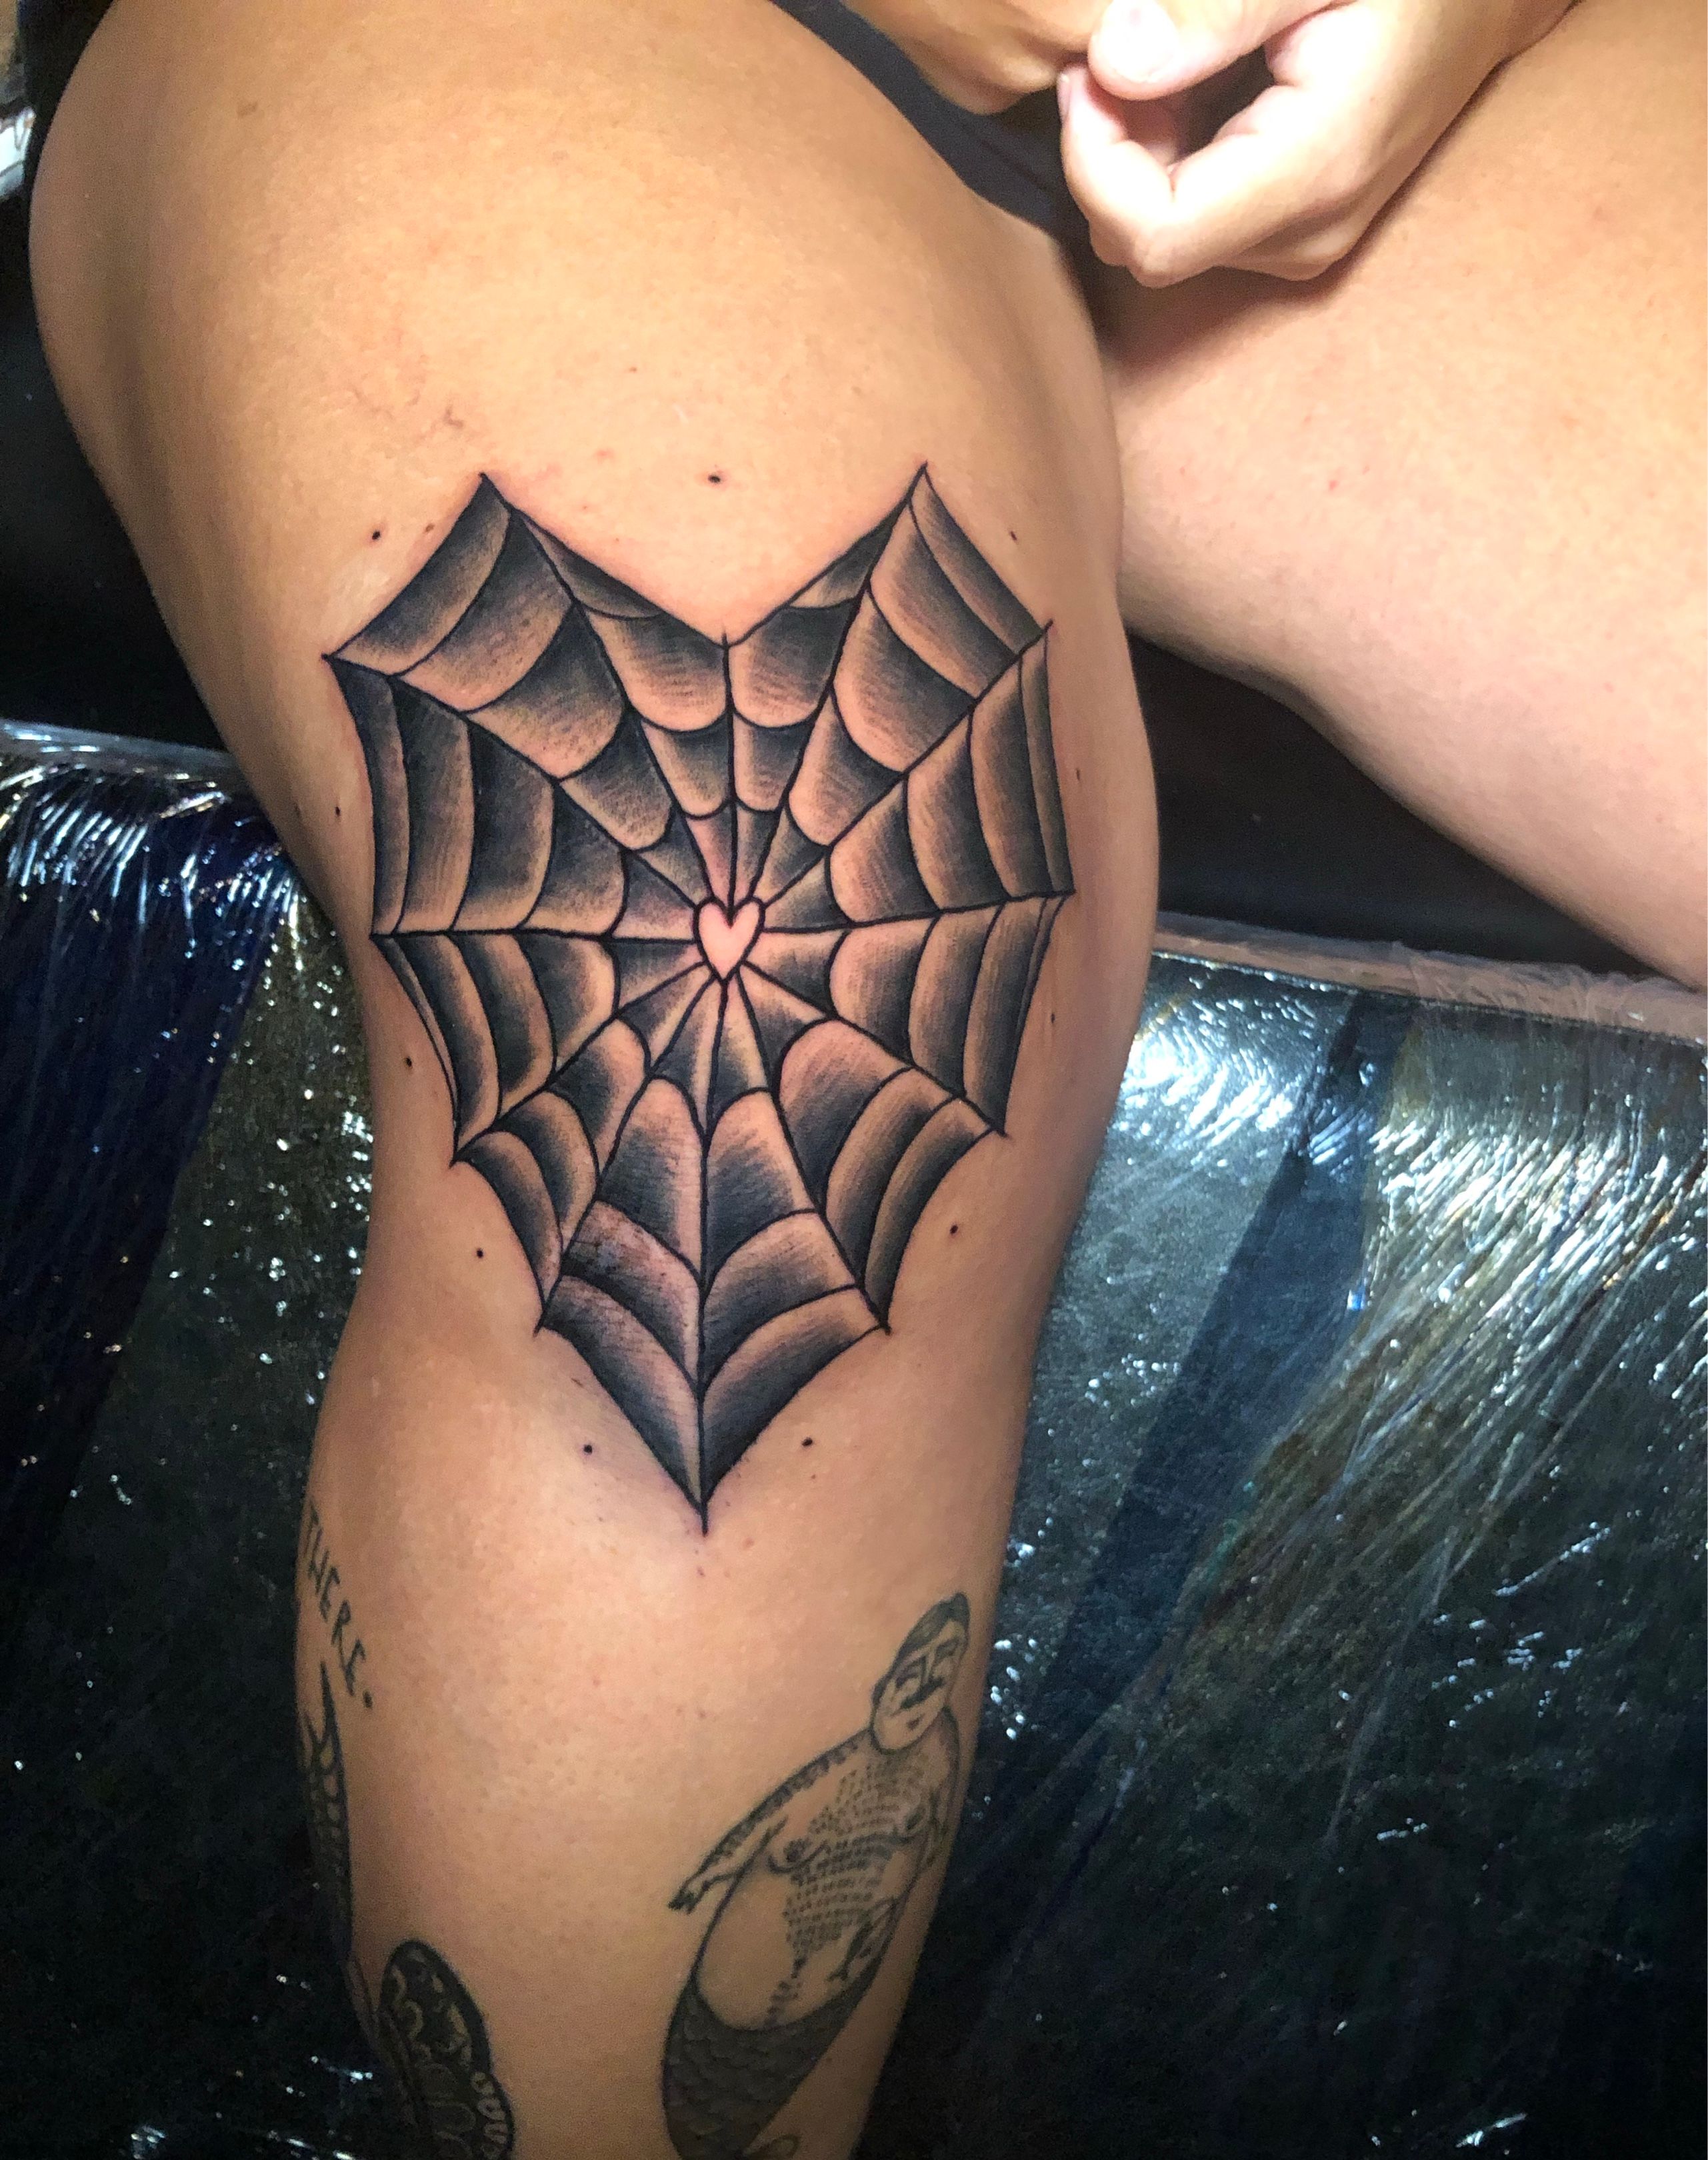 billieink killed it with a spider web knee piece Tattoo Tattoos ink  inked Tattooartist Tattooed Tattooart Ramsgateink Ramsgatebeach  By  Hollywood Tattoos Ramsgate  Facebook